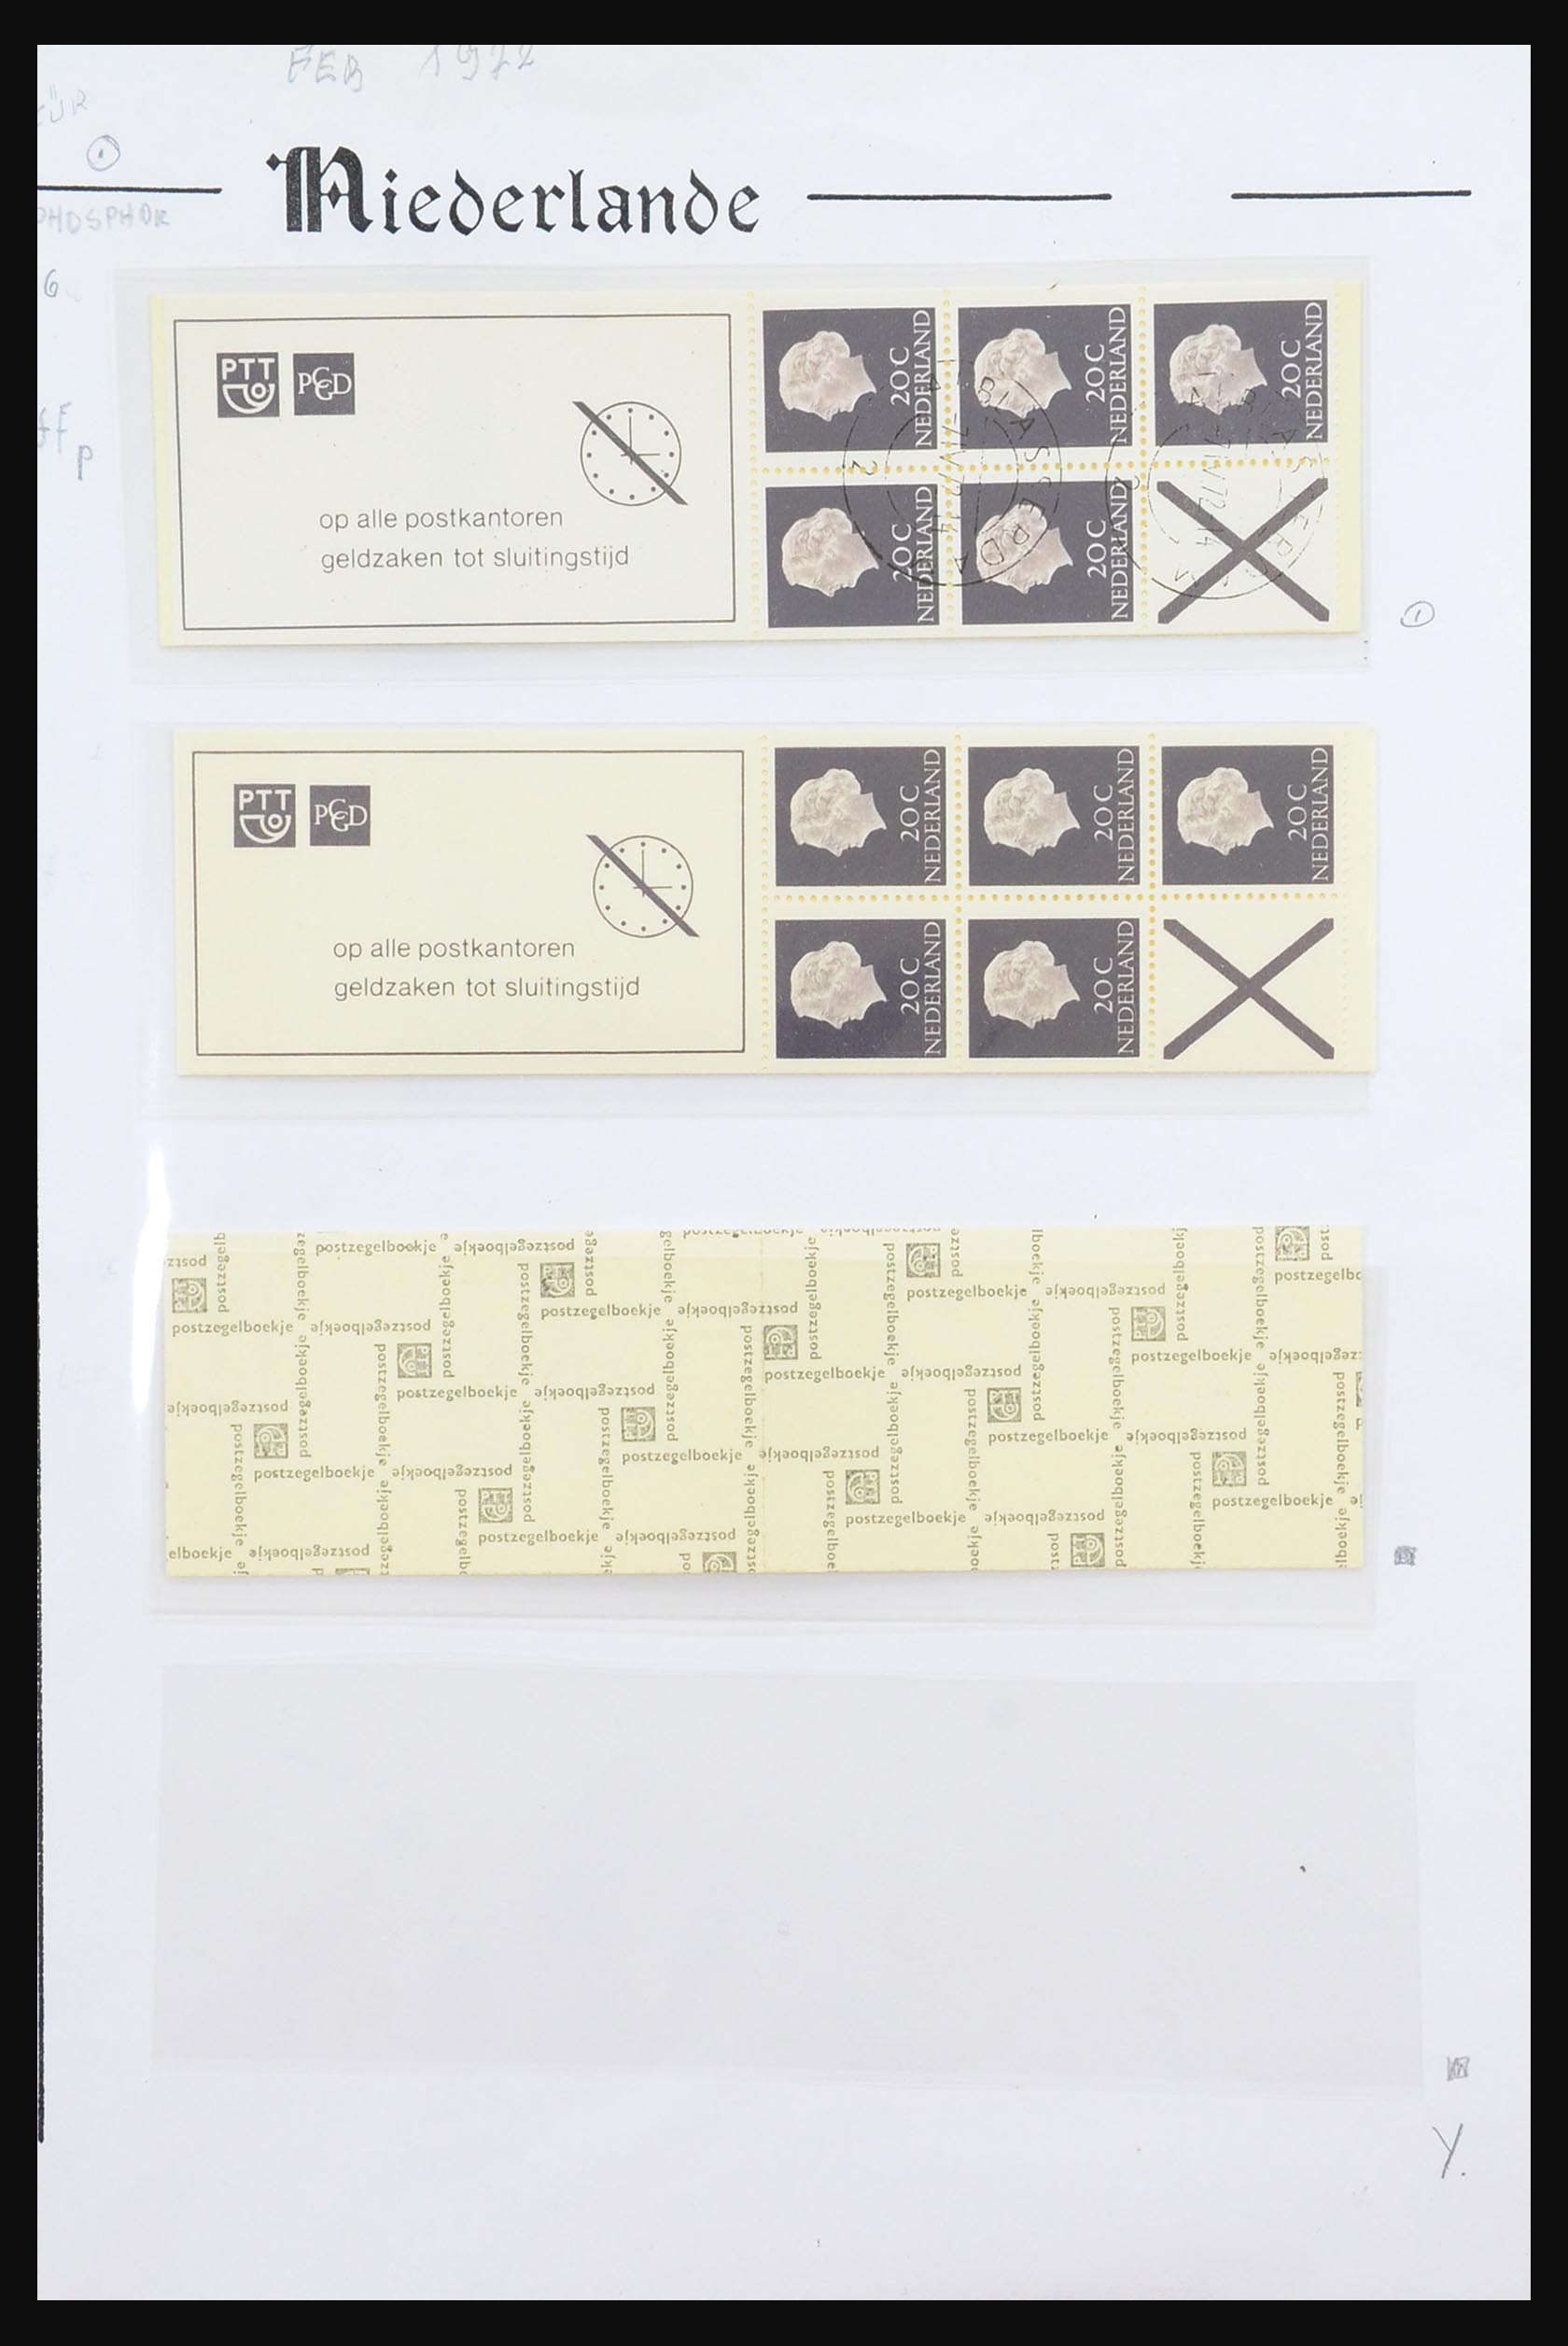 31311 017 - 31311 Netherlands stamp booklets 1964-1994.